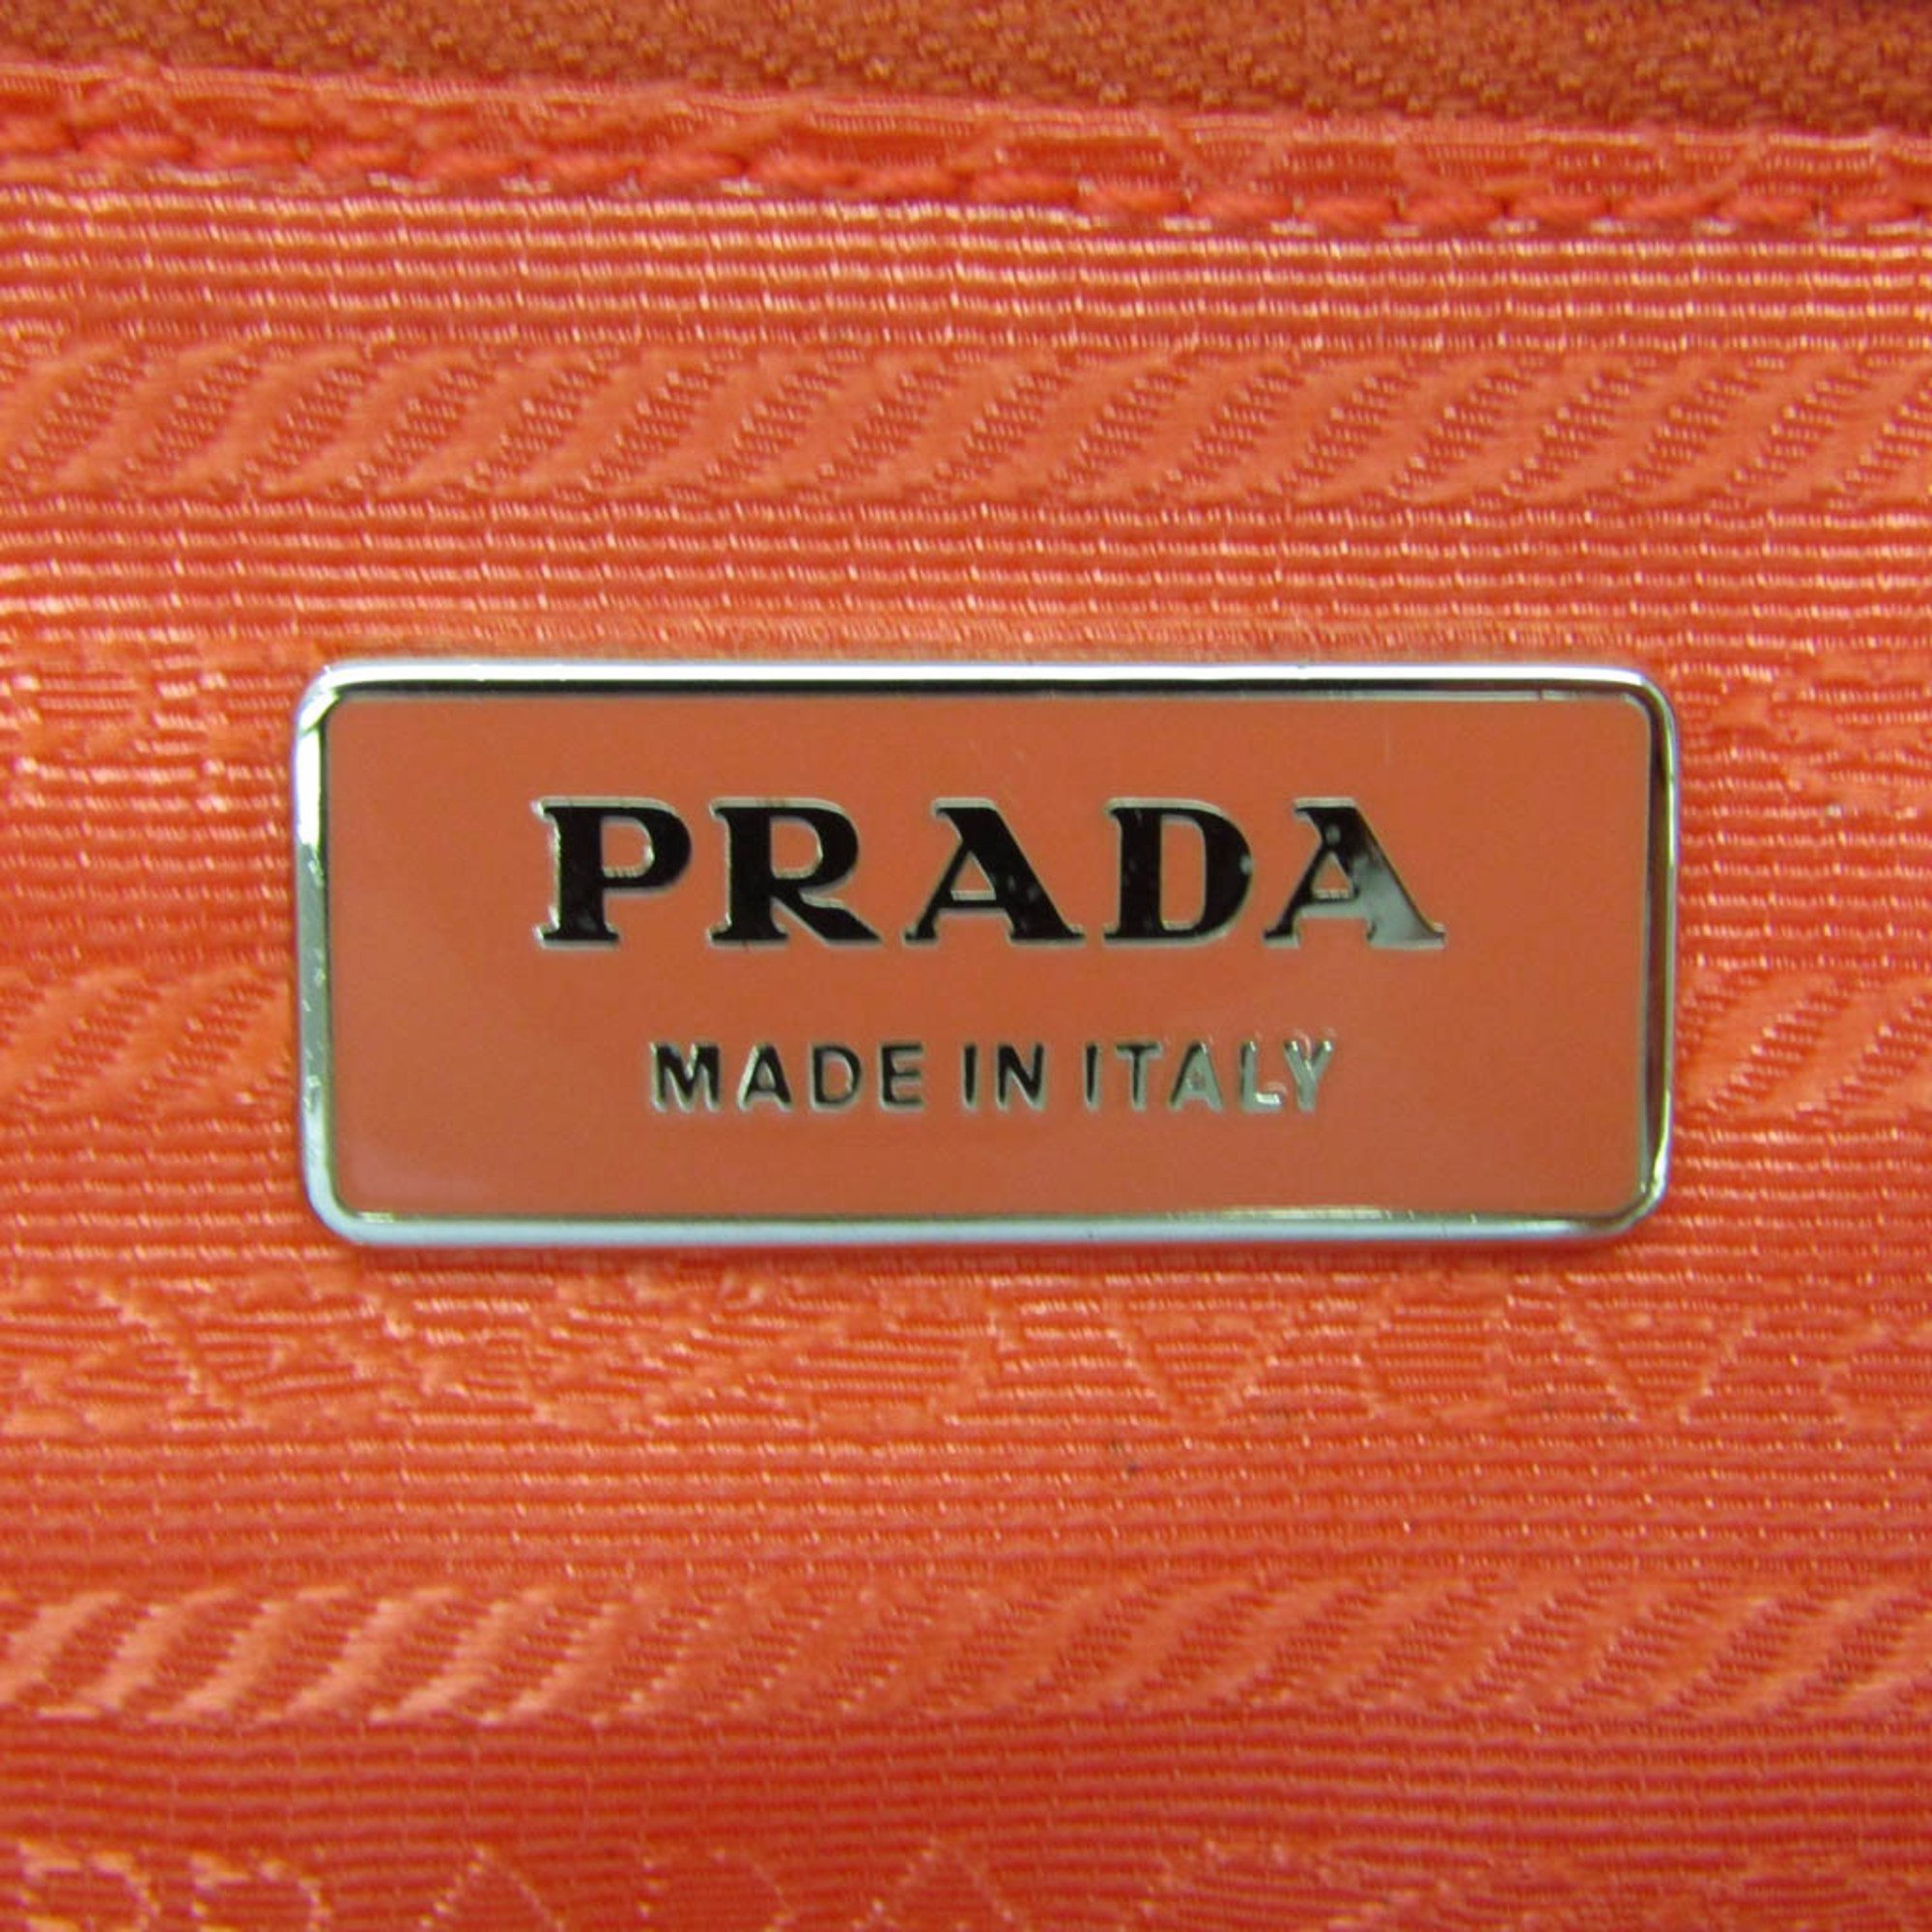 プラダ(Prada) VELA BR3851 レディース ナイロン ハンドバッグ,ショルダーバッグ ピンクオレンジ